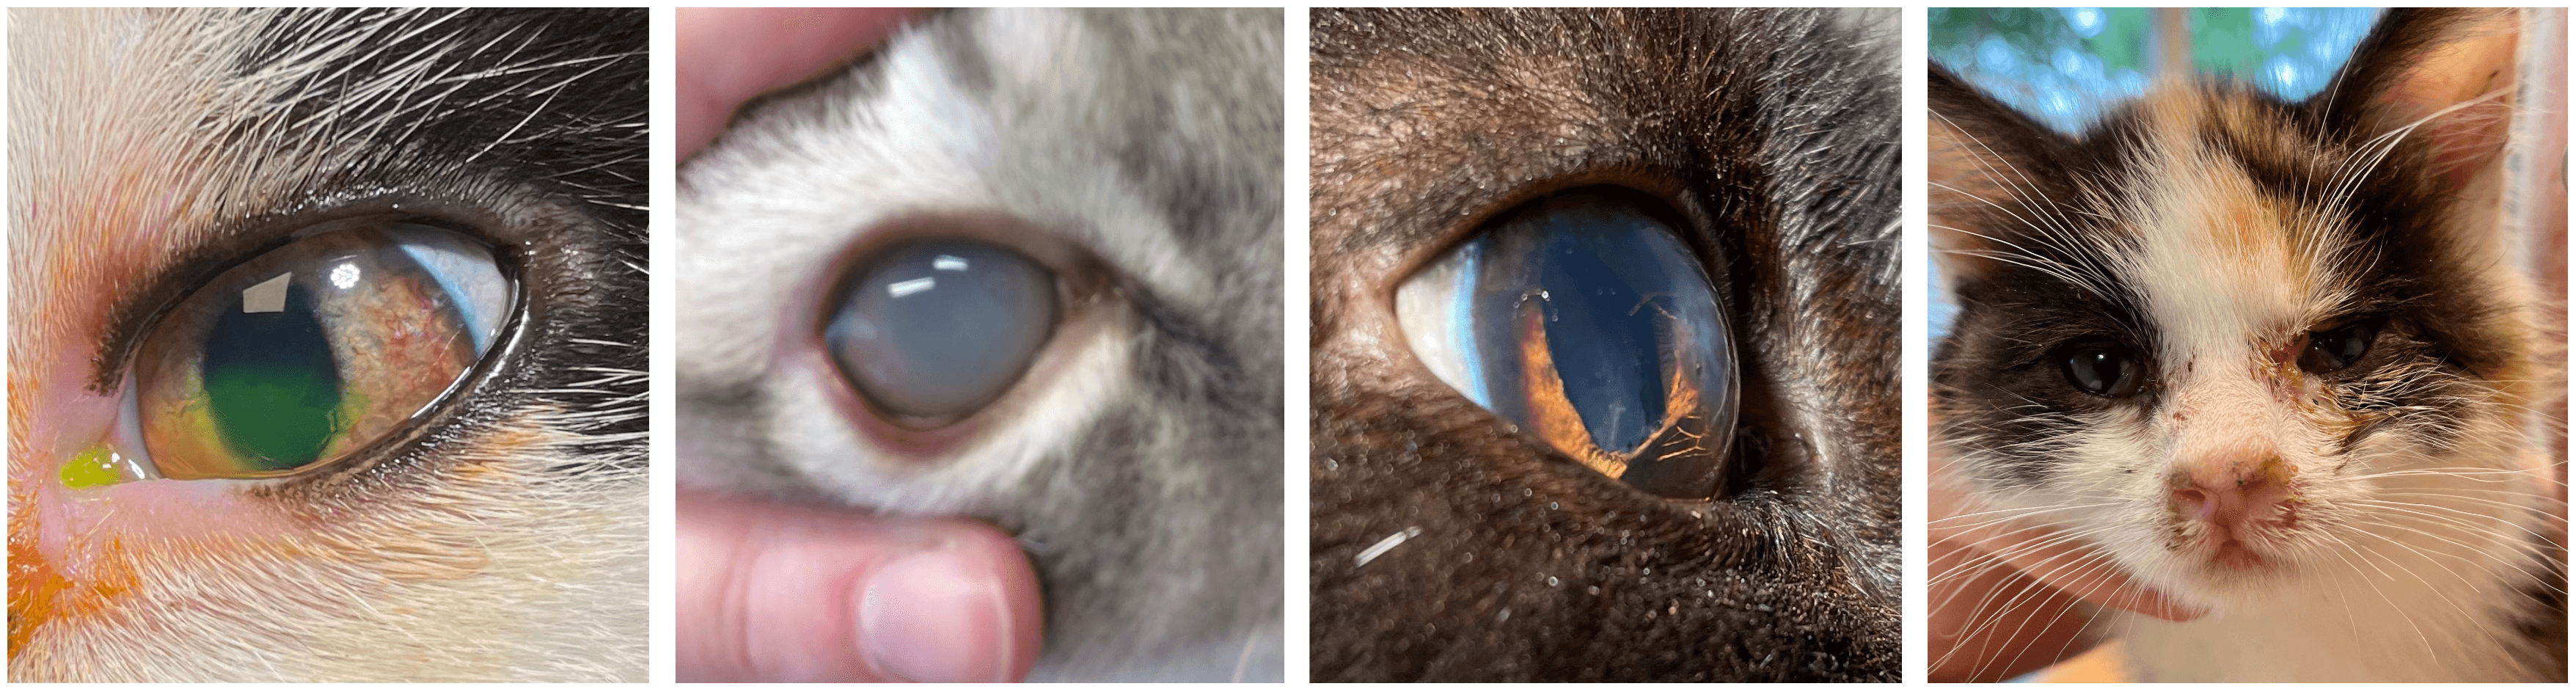 Kattenaids geeft regelmatig ontstekingen van de ogen